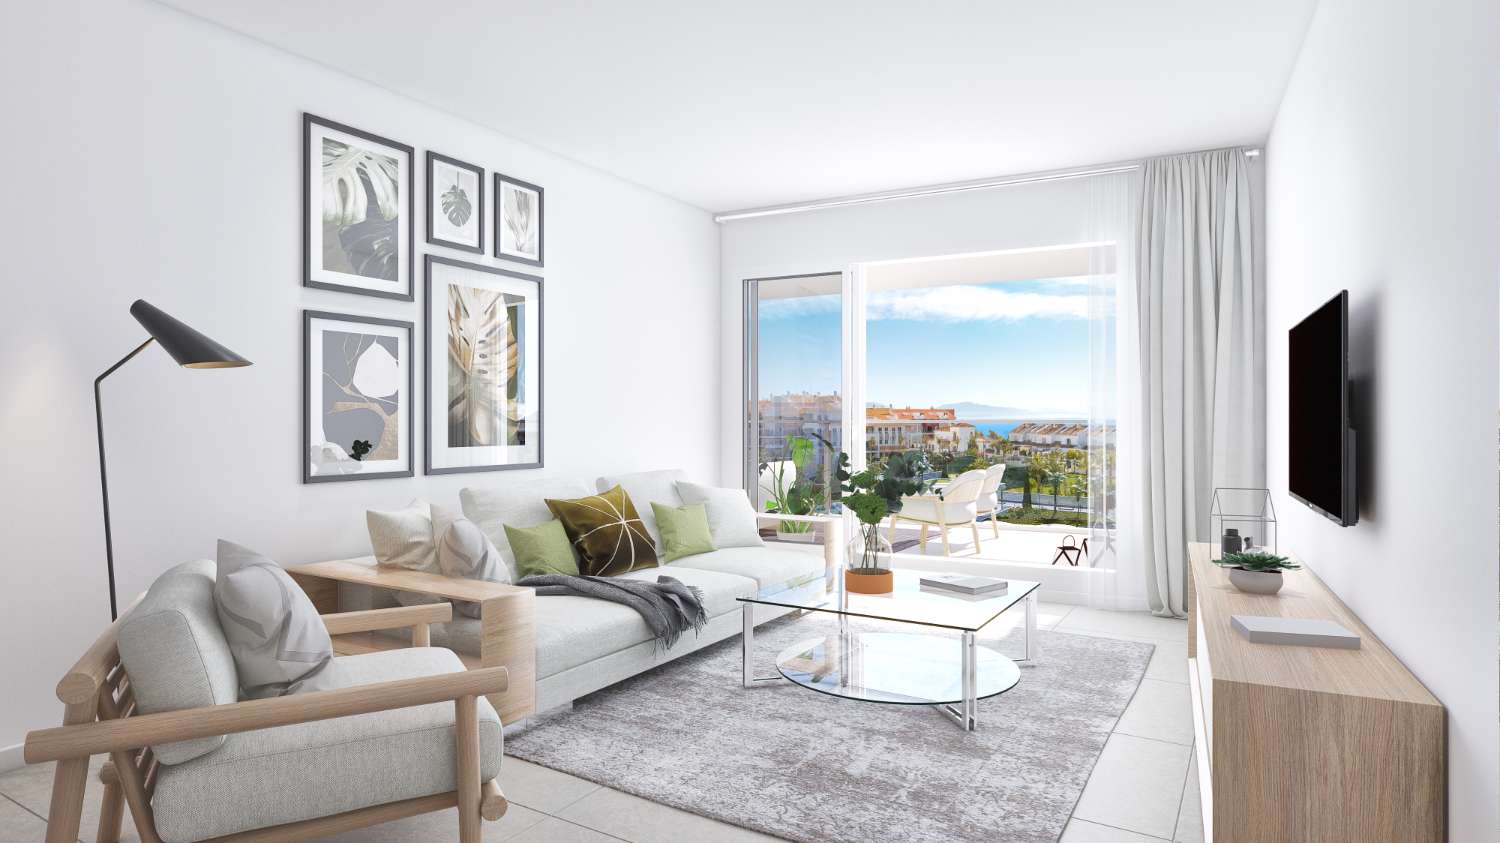 Nouveau développement d'appartements à Aldea Beach - Costa del Sol